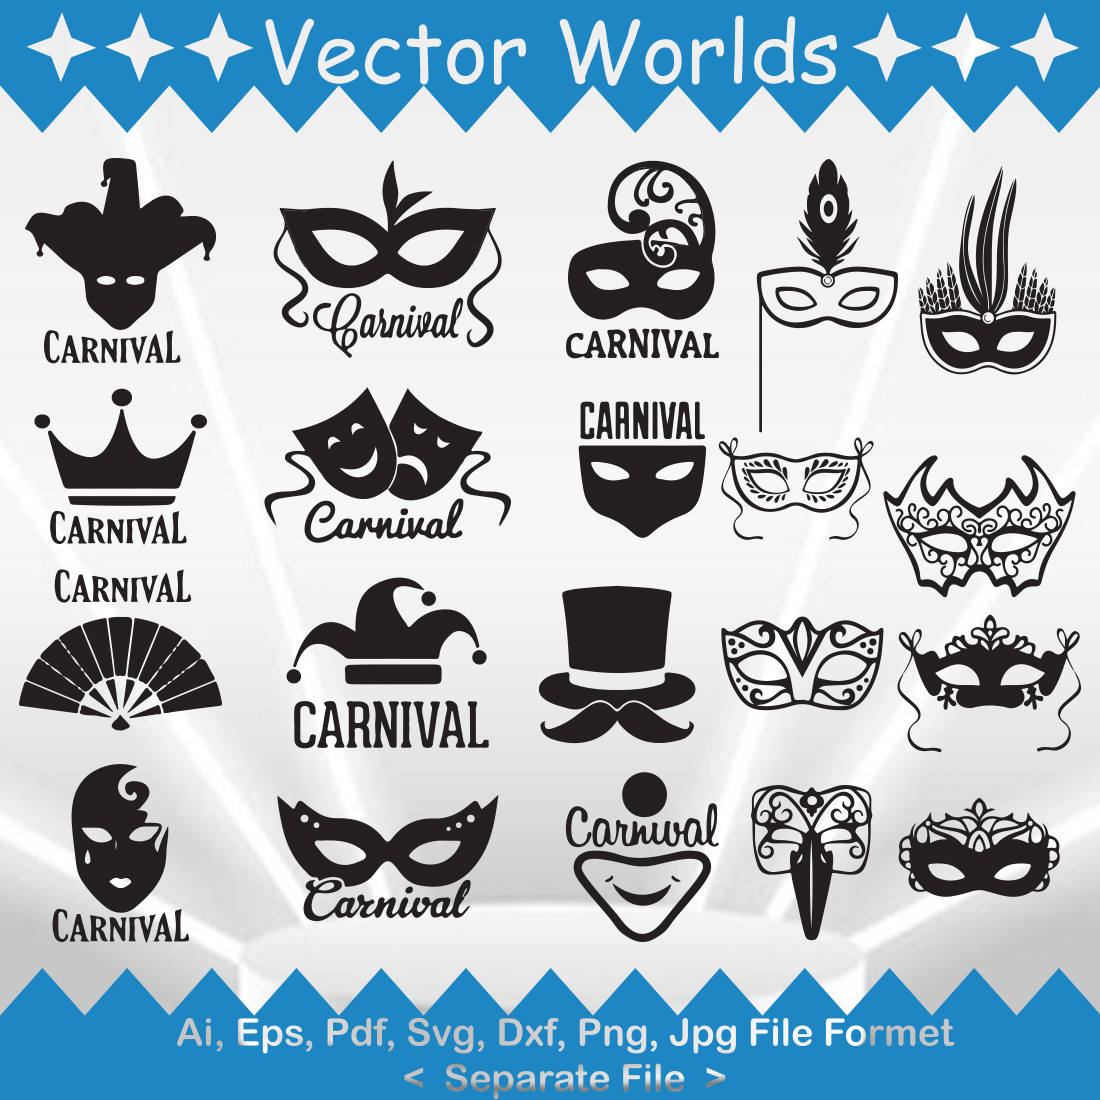 Carnival mask SVG Vector Design cover image.